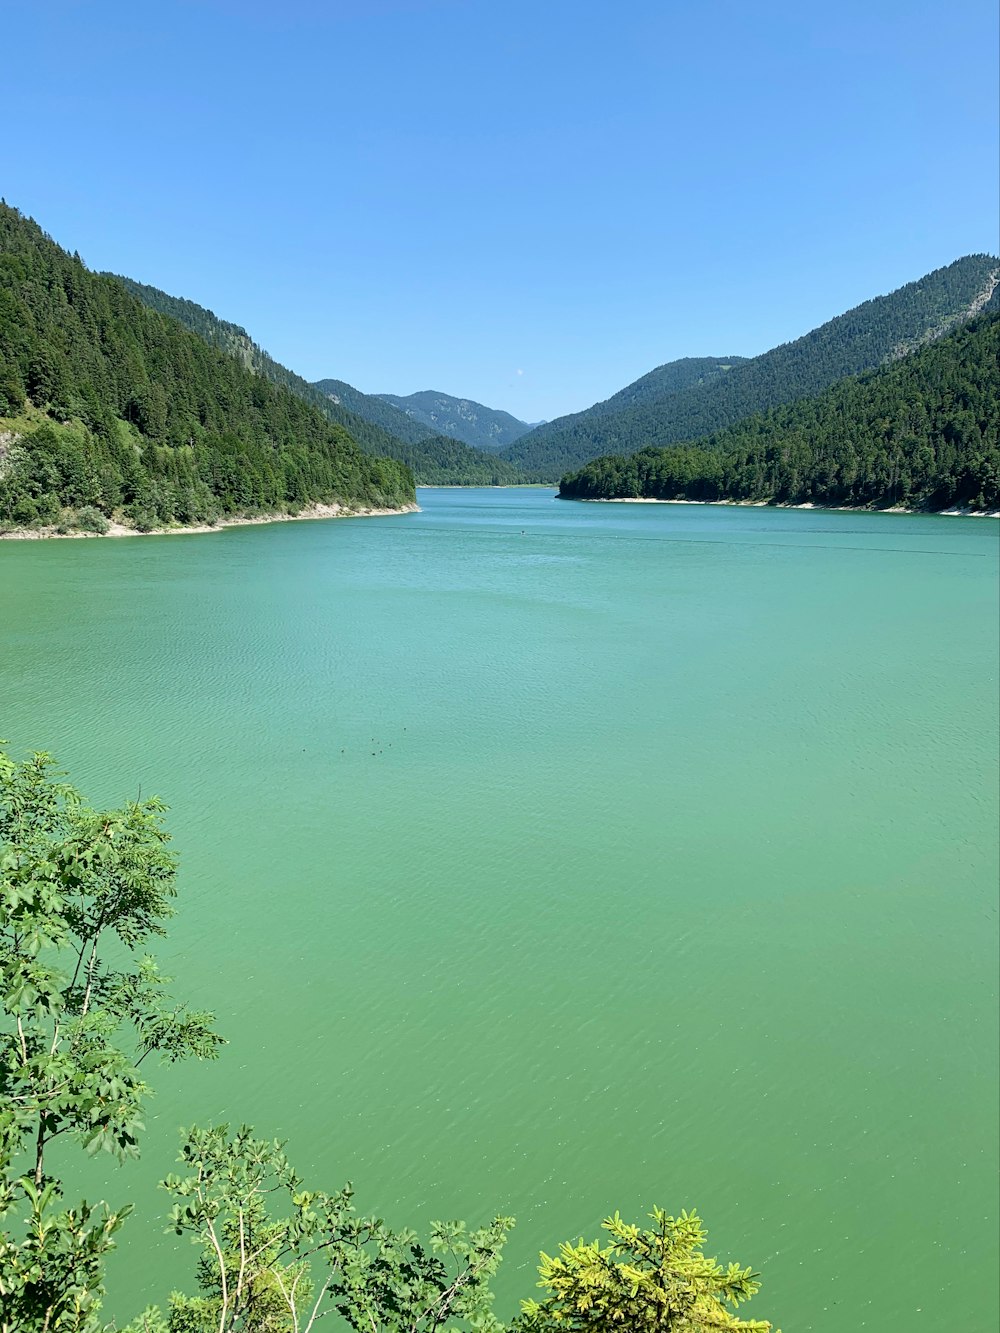 Lac vert entouré de montagnes verdoyantes pendant la journée